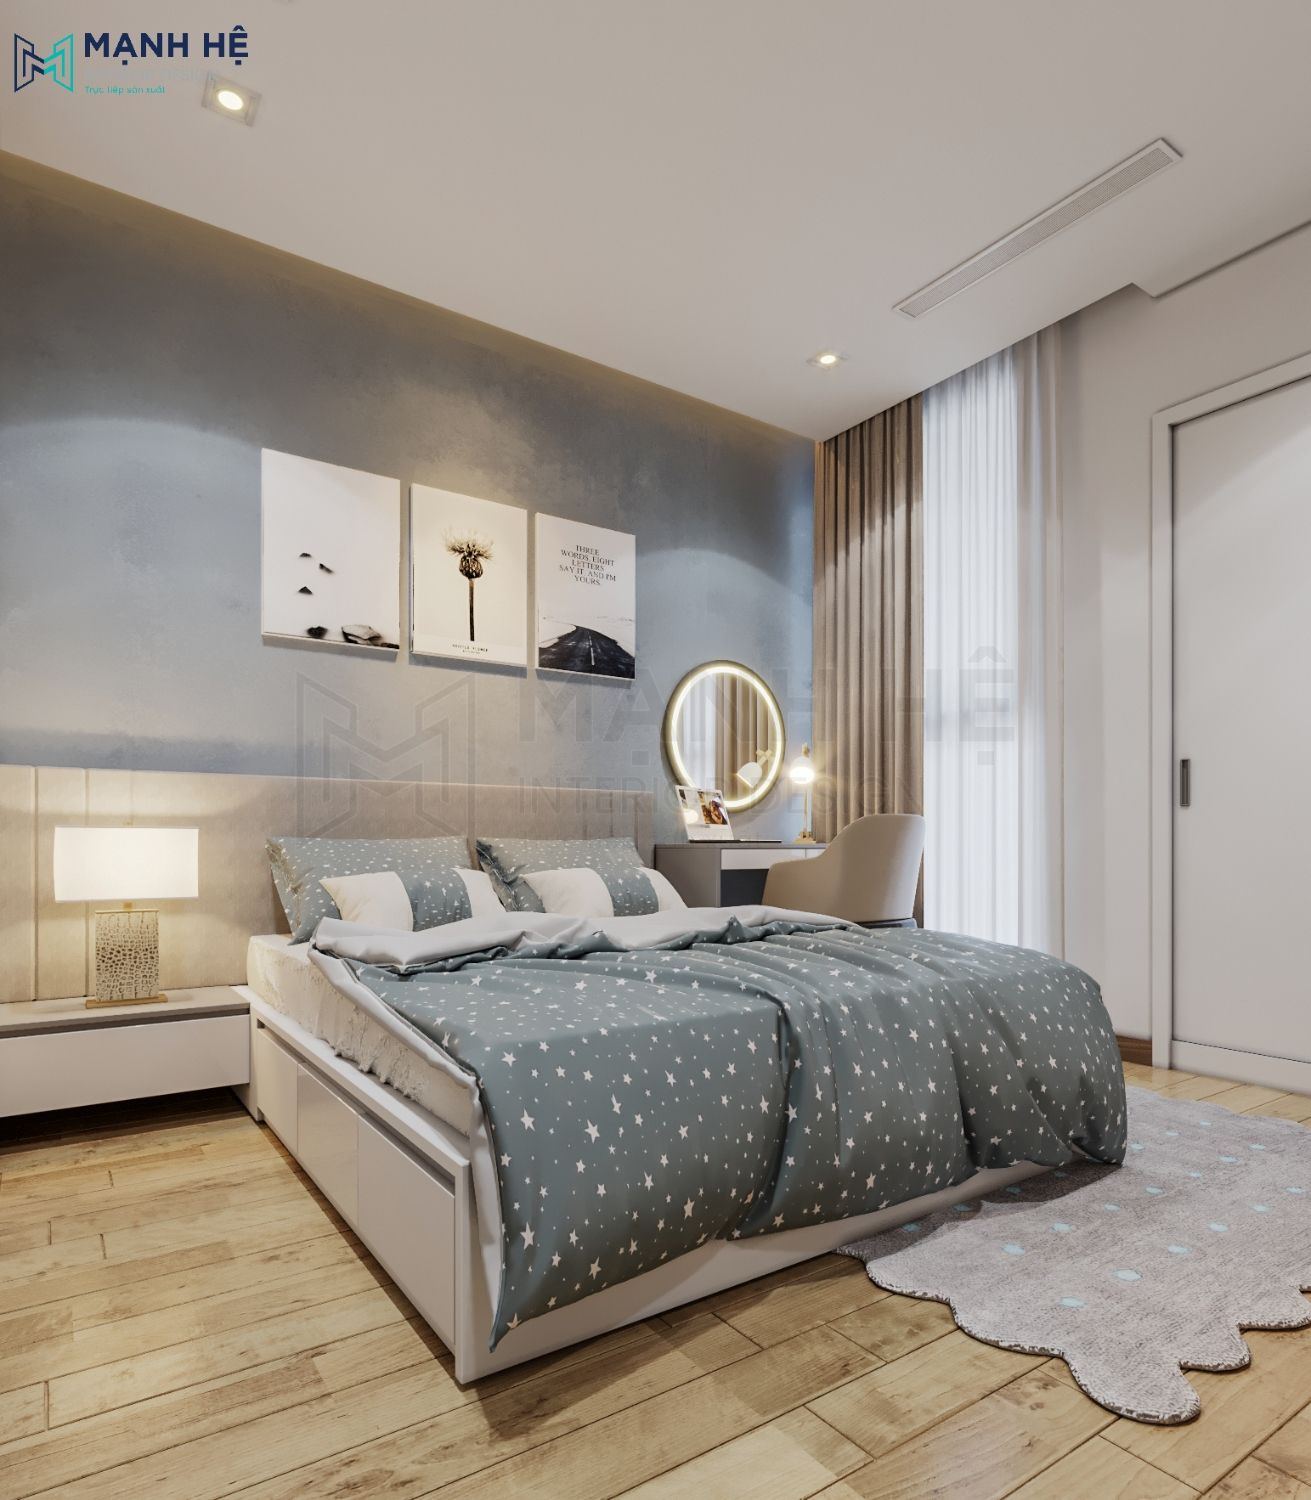 Giường hộp gỗ công nghiệp có ngăn kéo được sơn trắng phối với màu nâu của sàn gỗ và vách tường mang đến không gian ấm áp, lãng mạn cho phòng ngủ